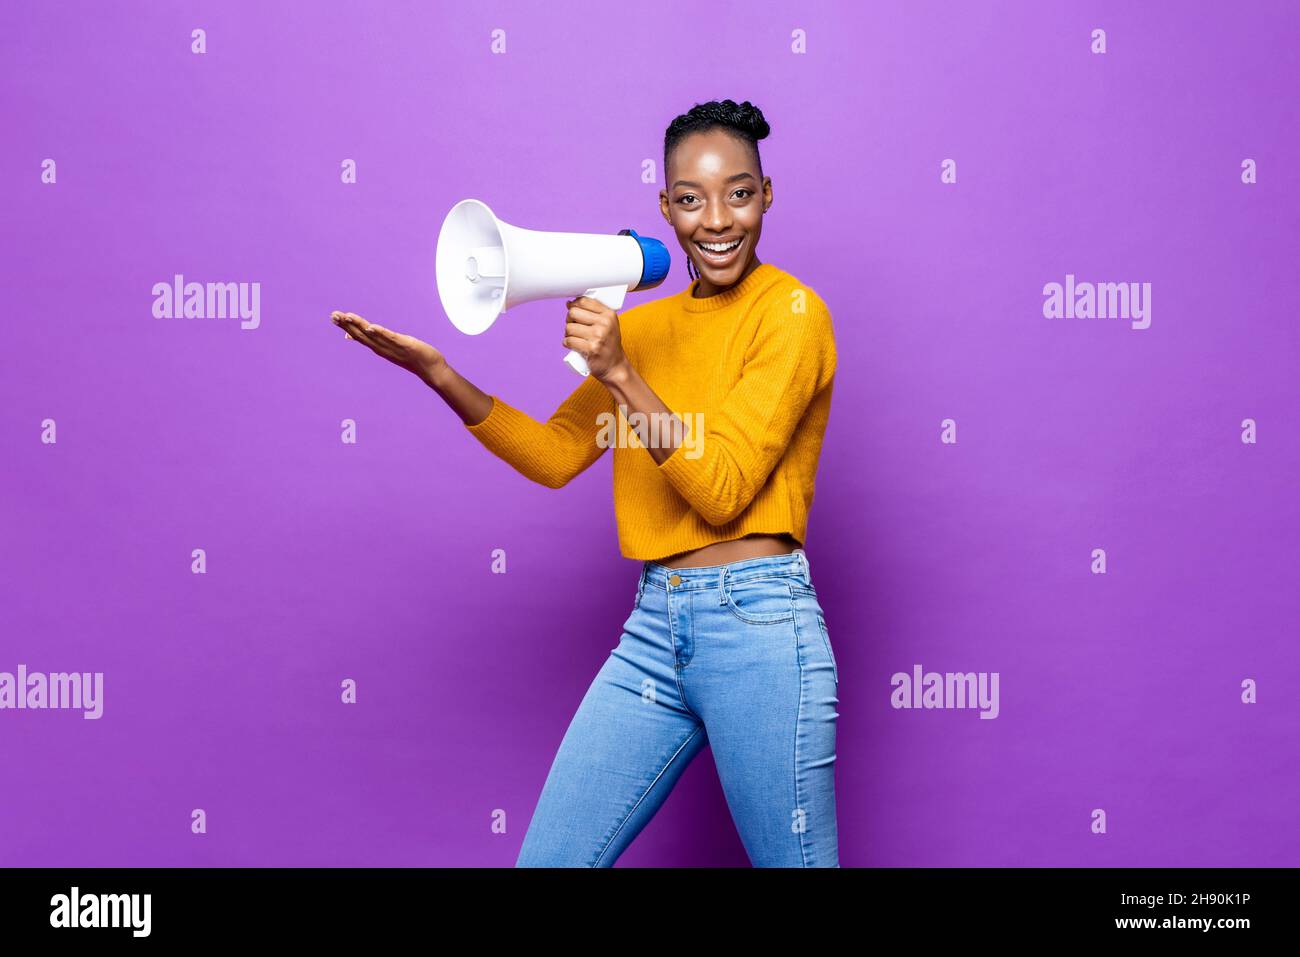 Porträt einer afroamerikanischen Frau, die ein Megaphon hält und die Hand in einem isolierten violetten Studiohintergrund öffnet Stockfoto